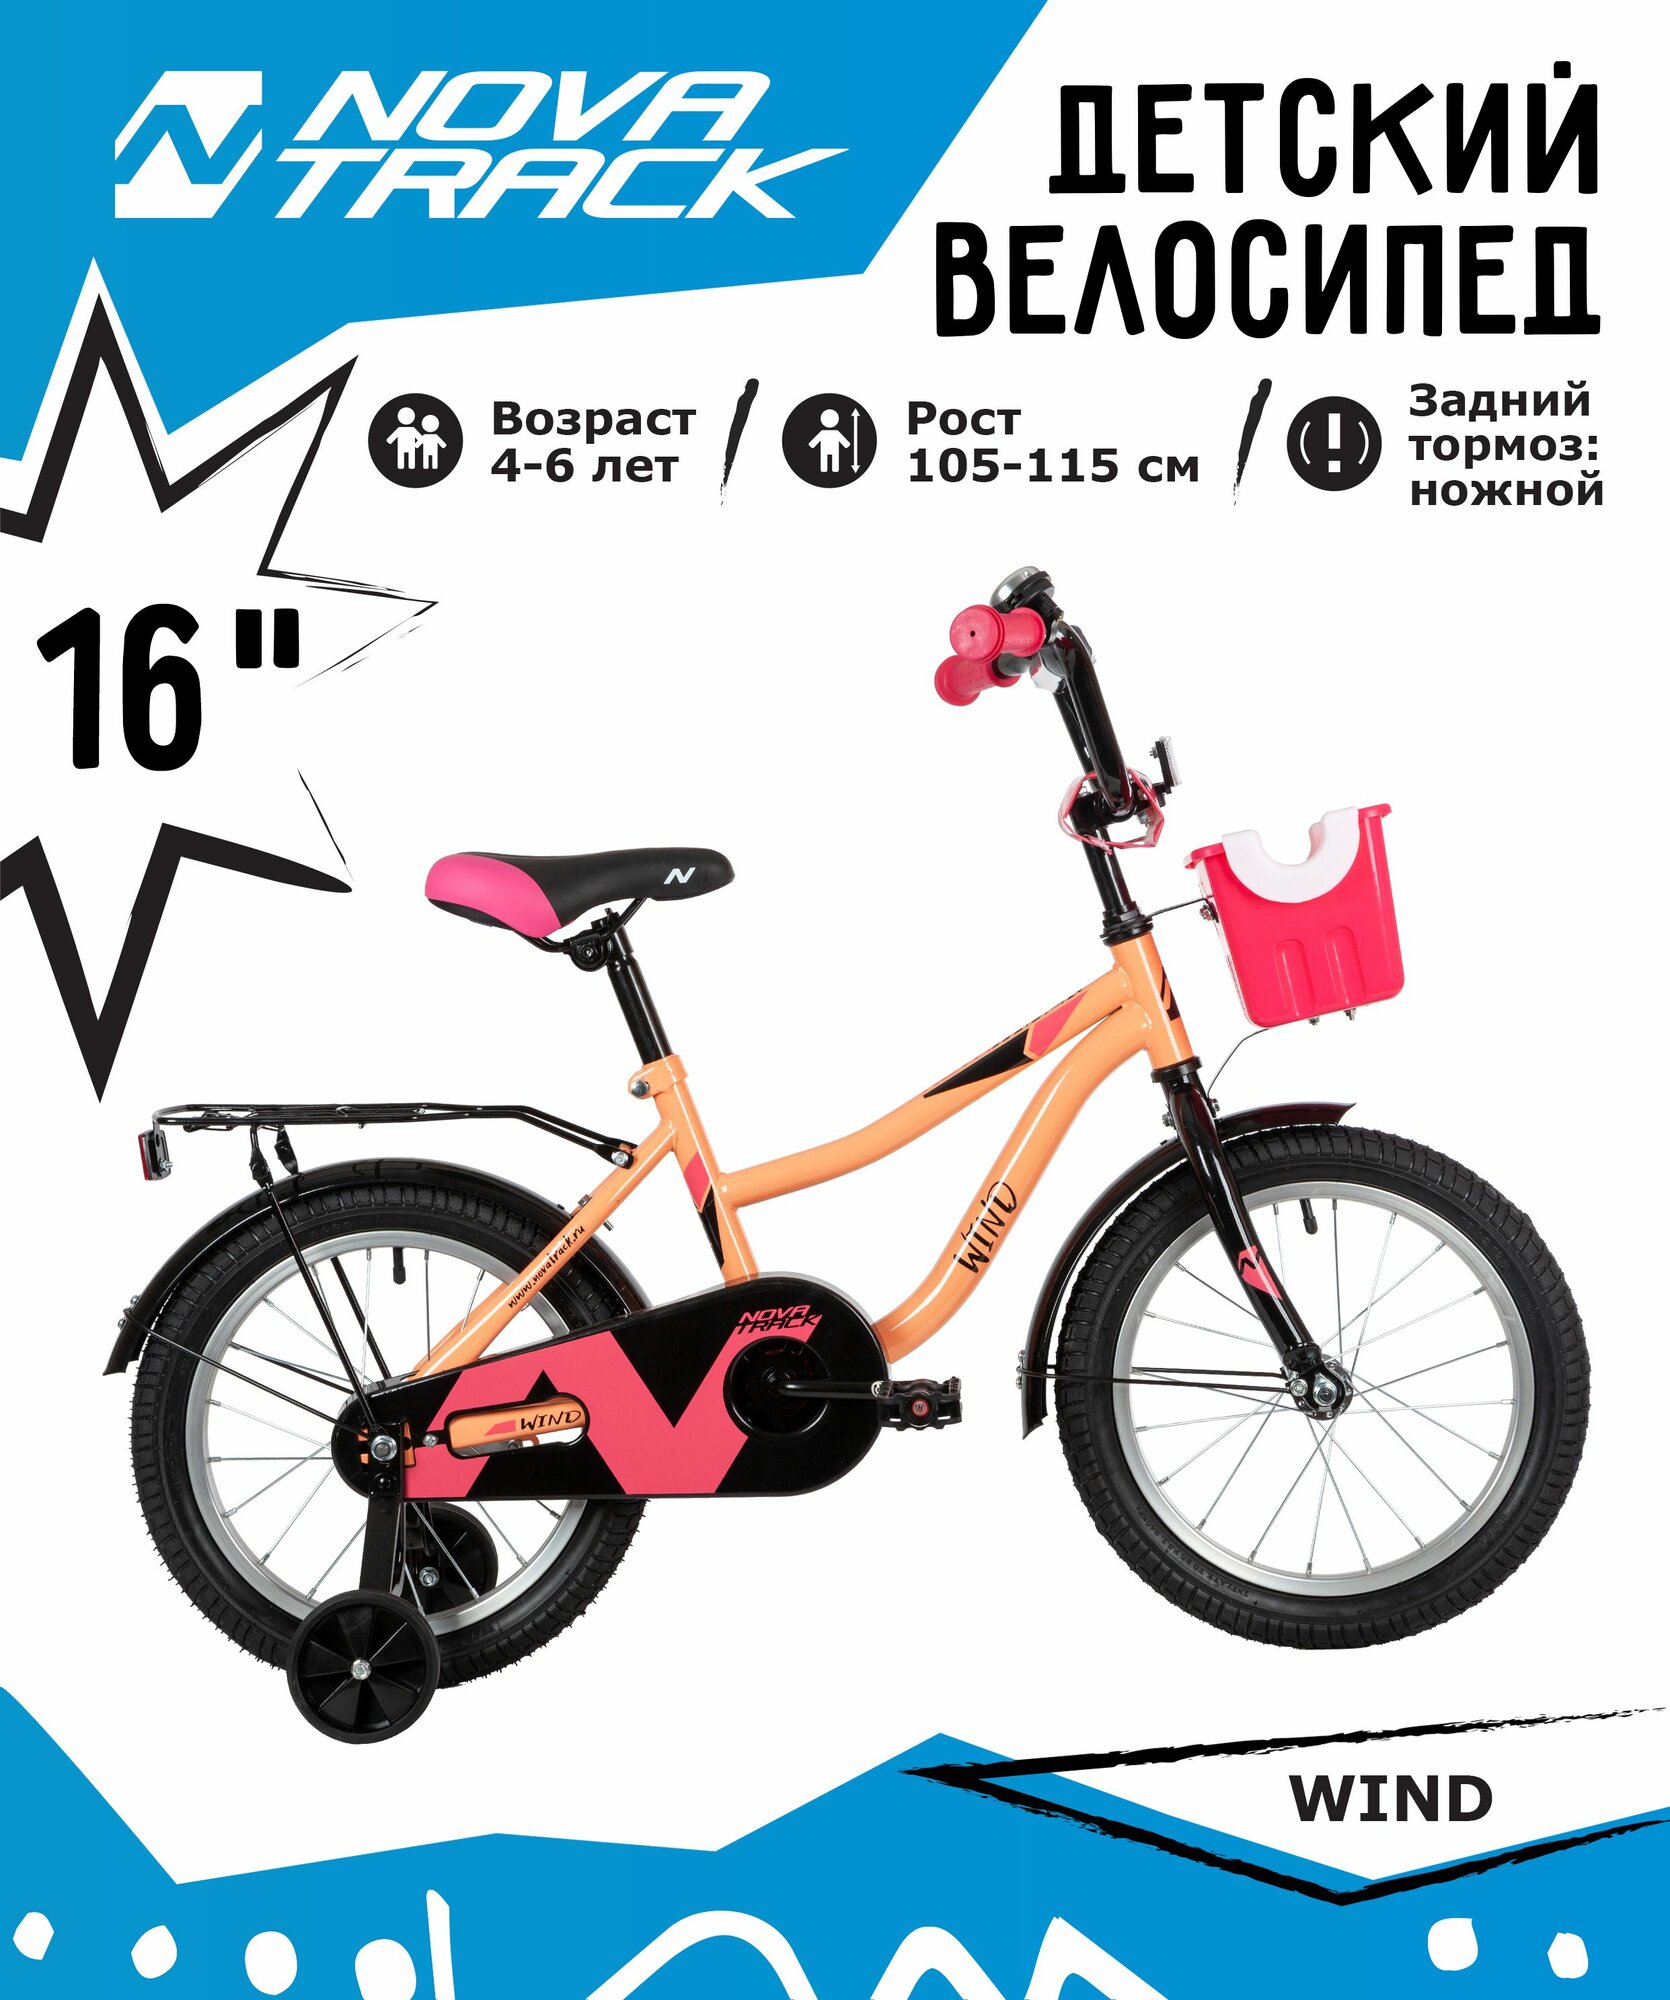 Велосипед NOVATRACK 16" WIND коралловый, полная защита цепи, ножной тормоз, крылья, багажник, пер. корзина